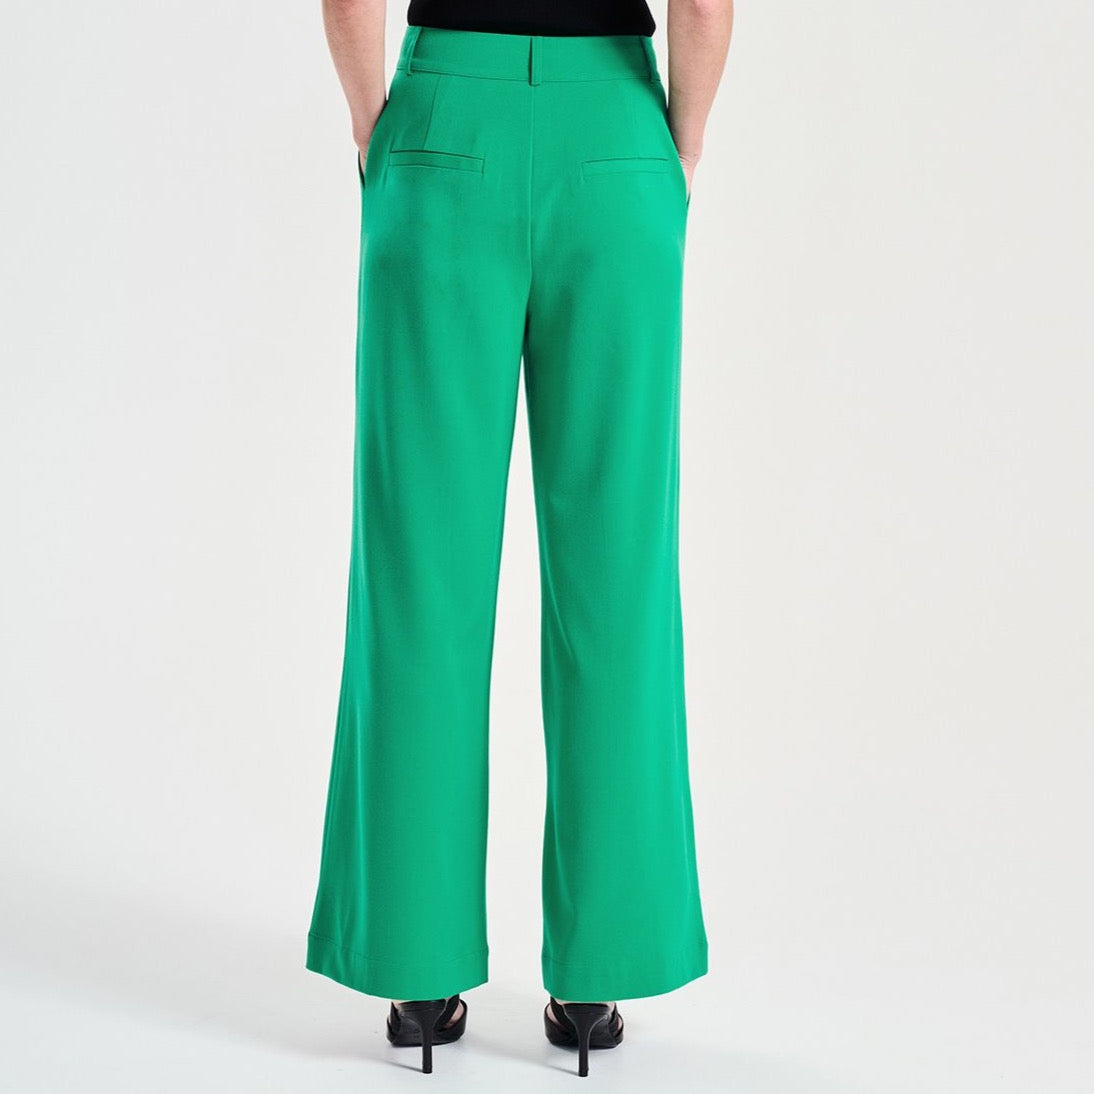 Jolie Suit Pant - Evergreen